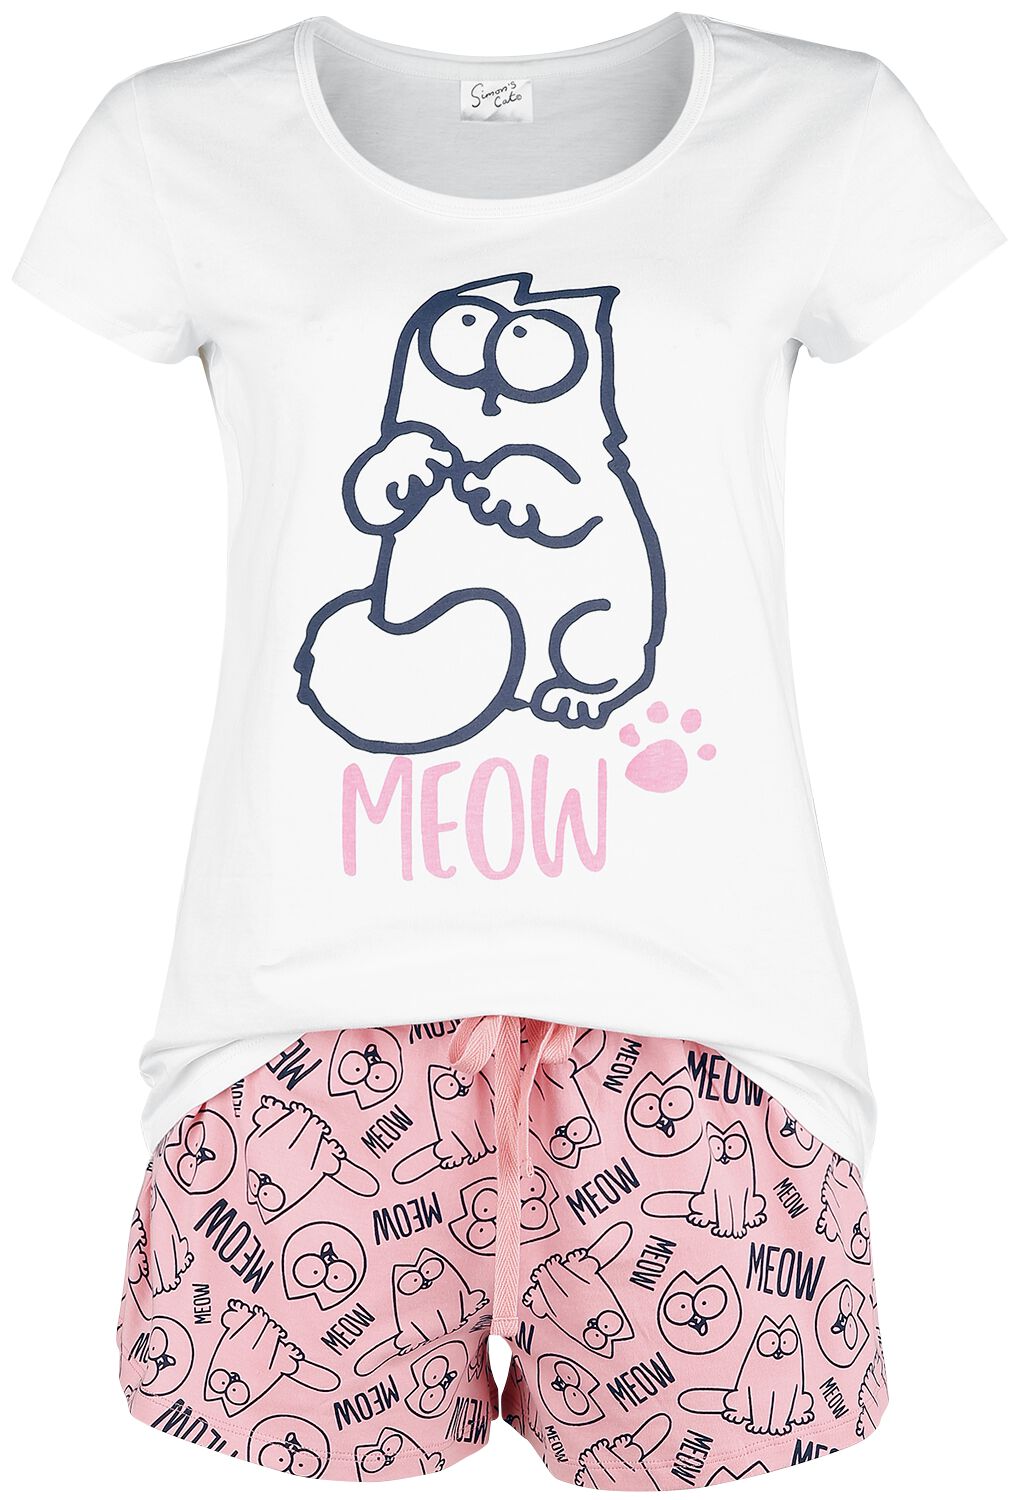 simons cat schlafanzug - meow - m bis 3xl - fÃ¼r damen - grÃ¶ÃŸe xxl - - emp exklusives merchandise! weiÃŸ/rosa donna